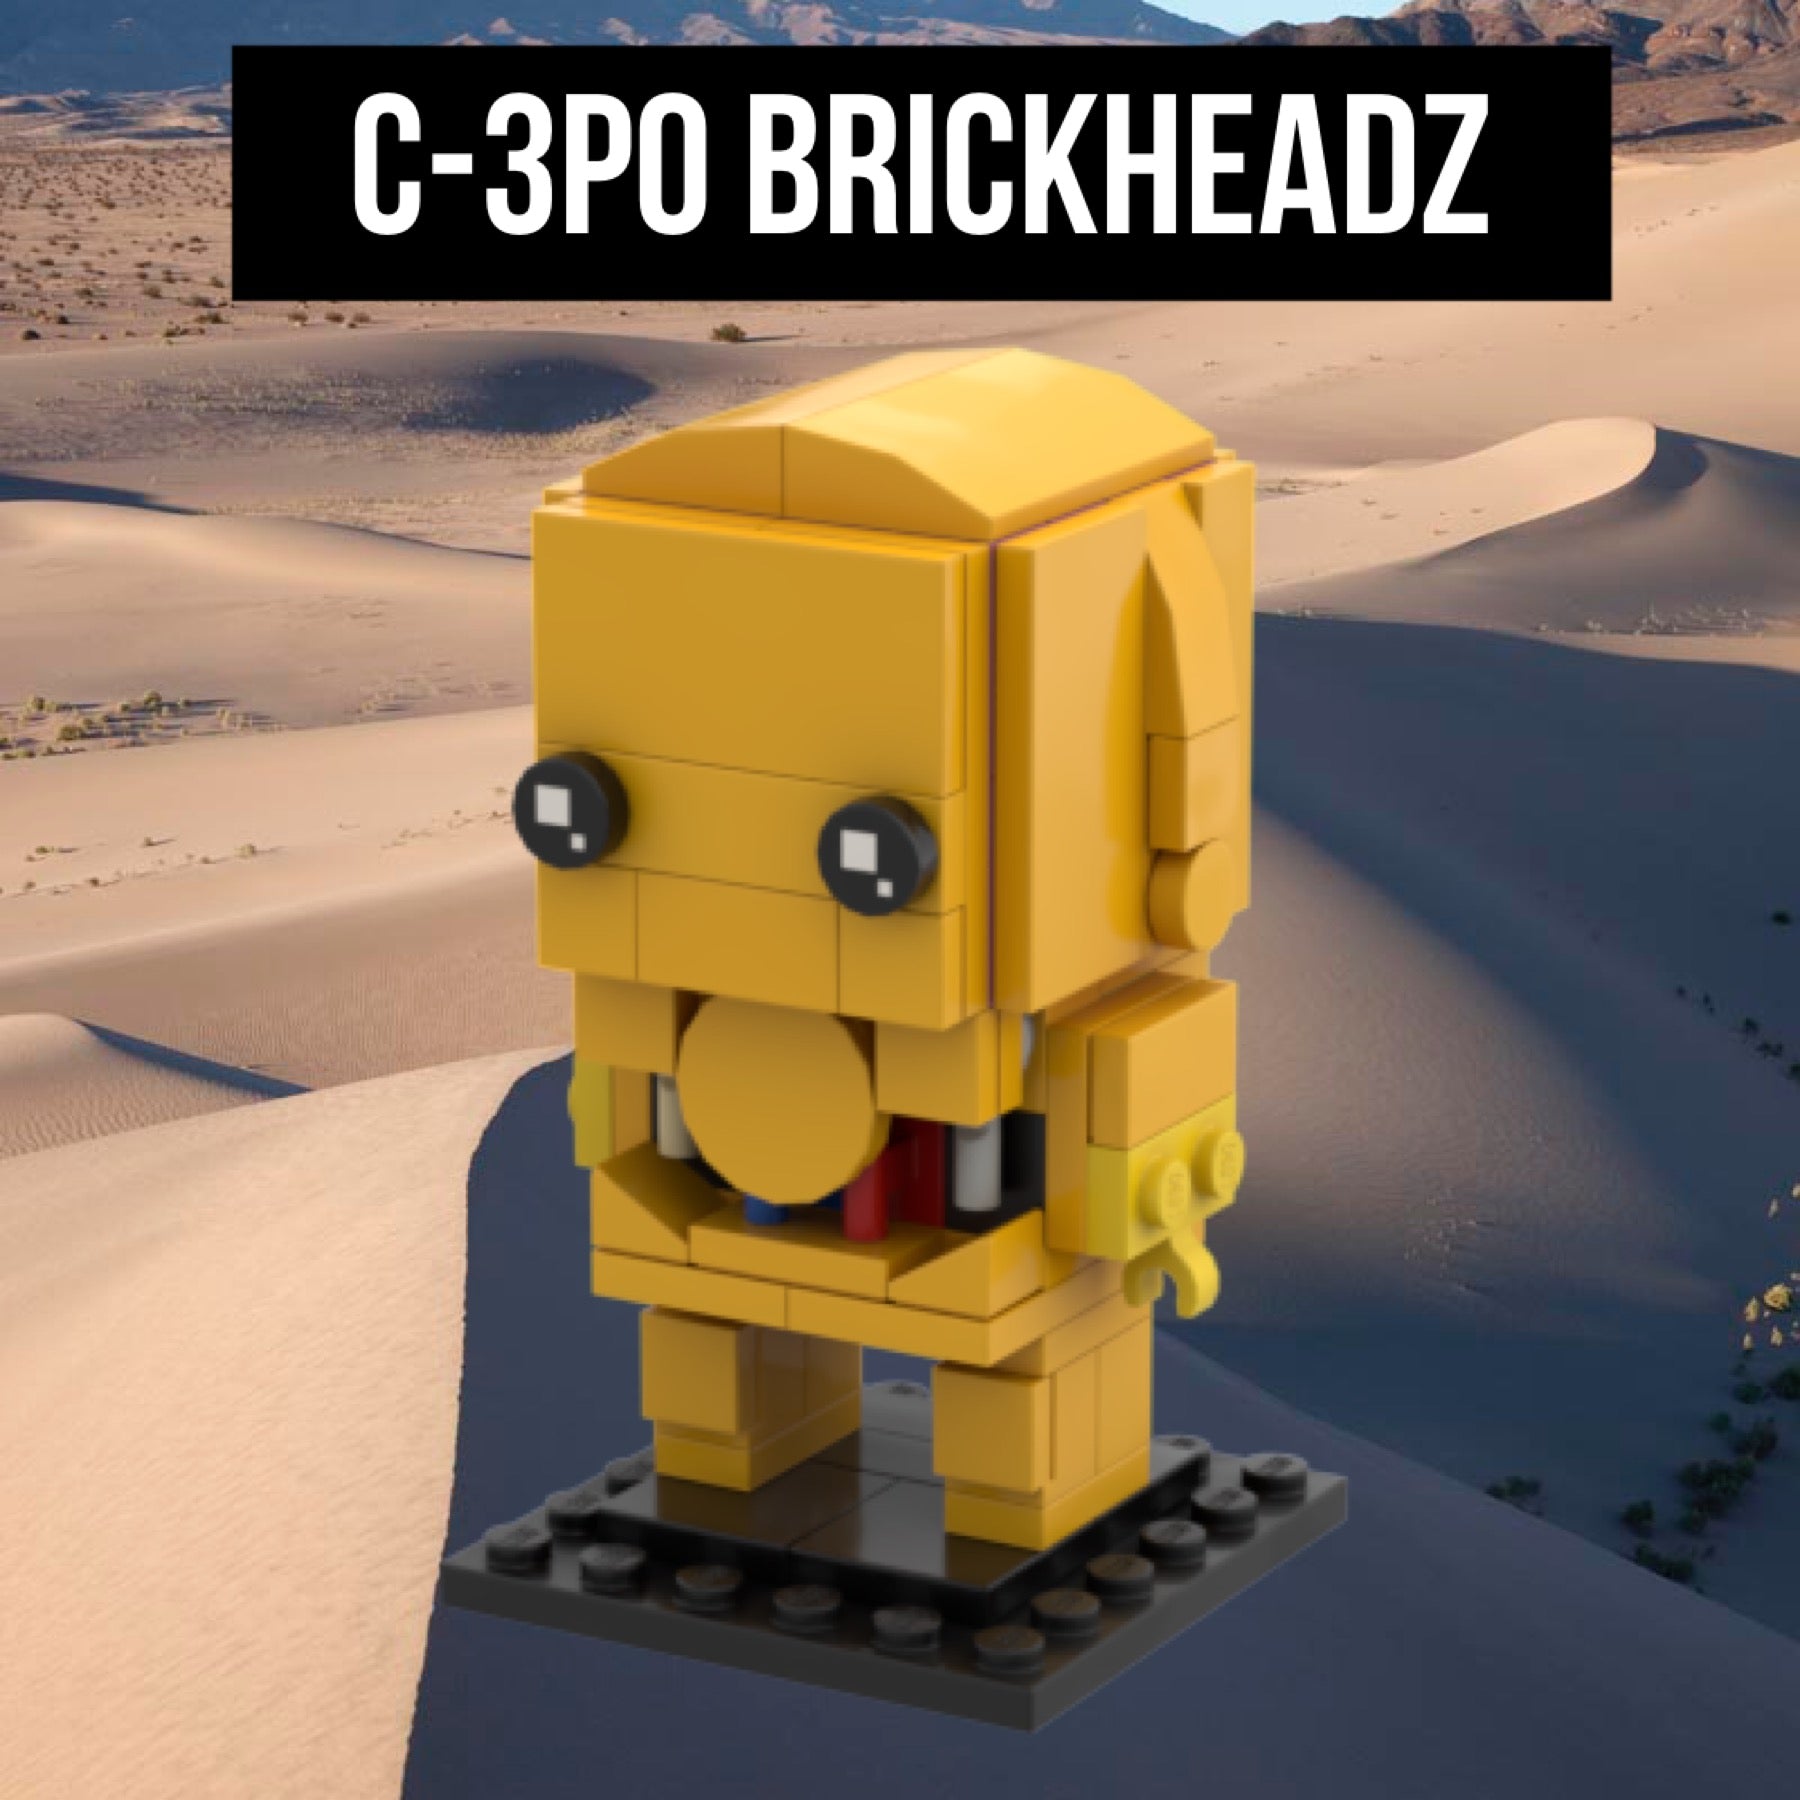 C-3PO BRICKHEADZ